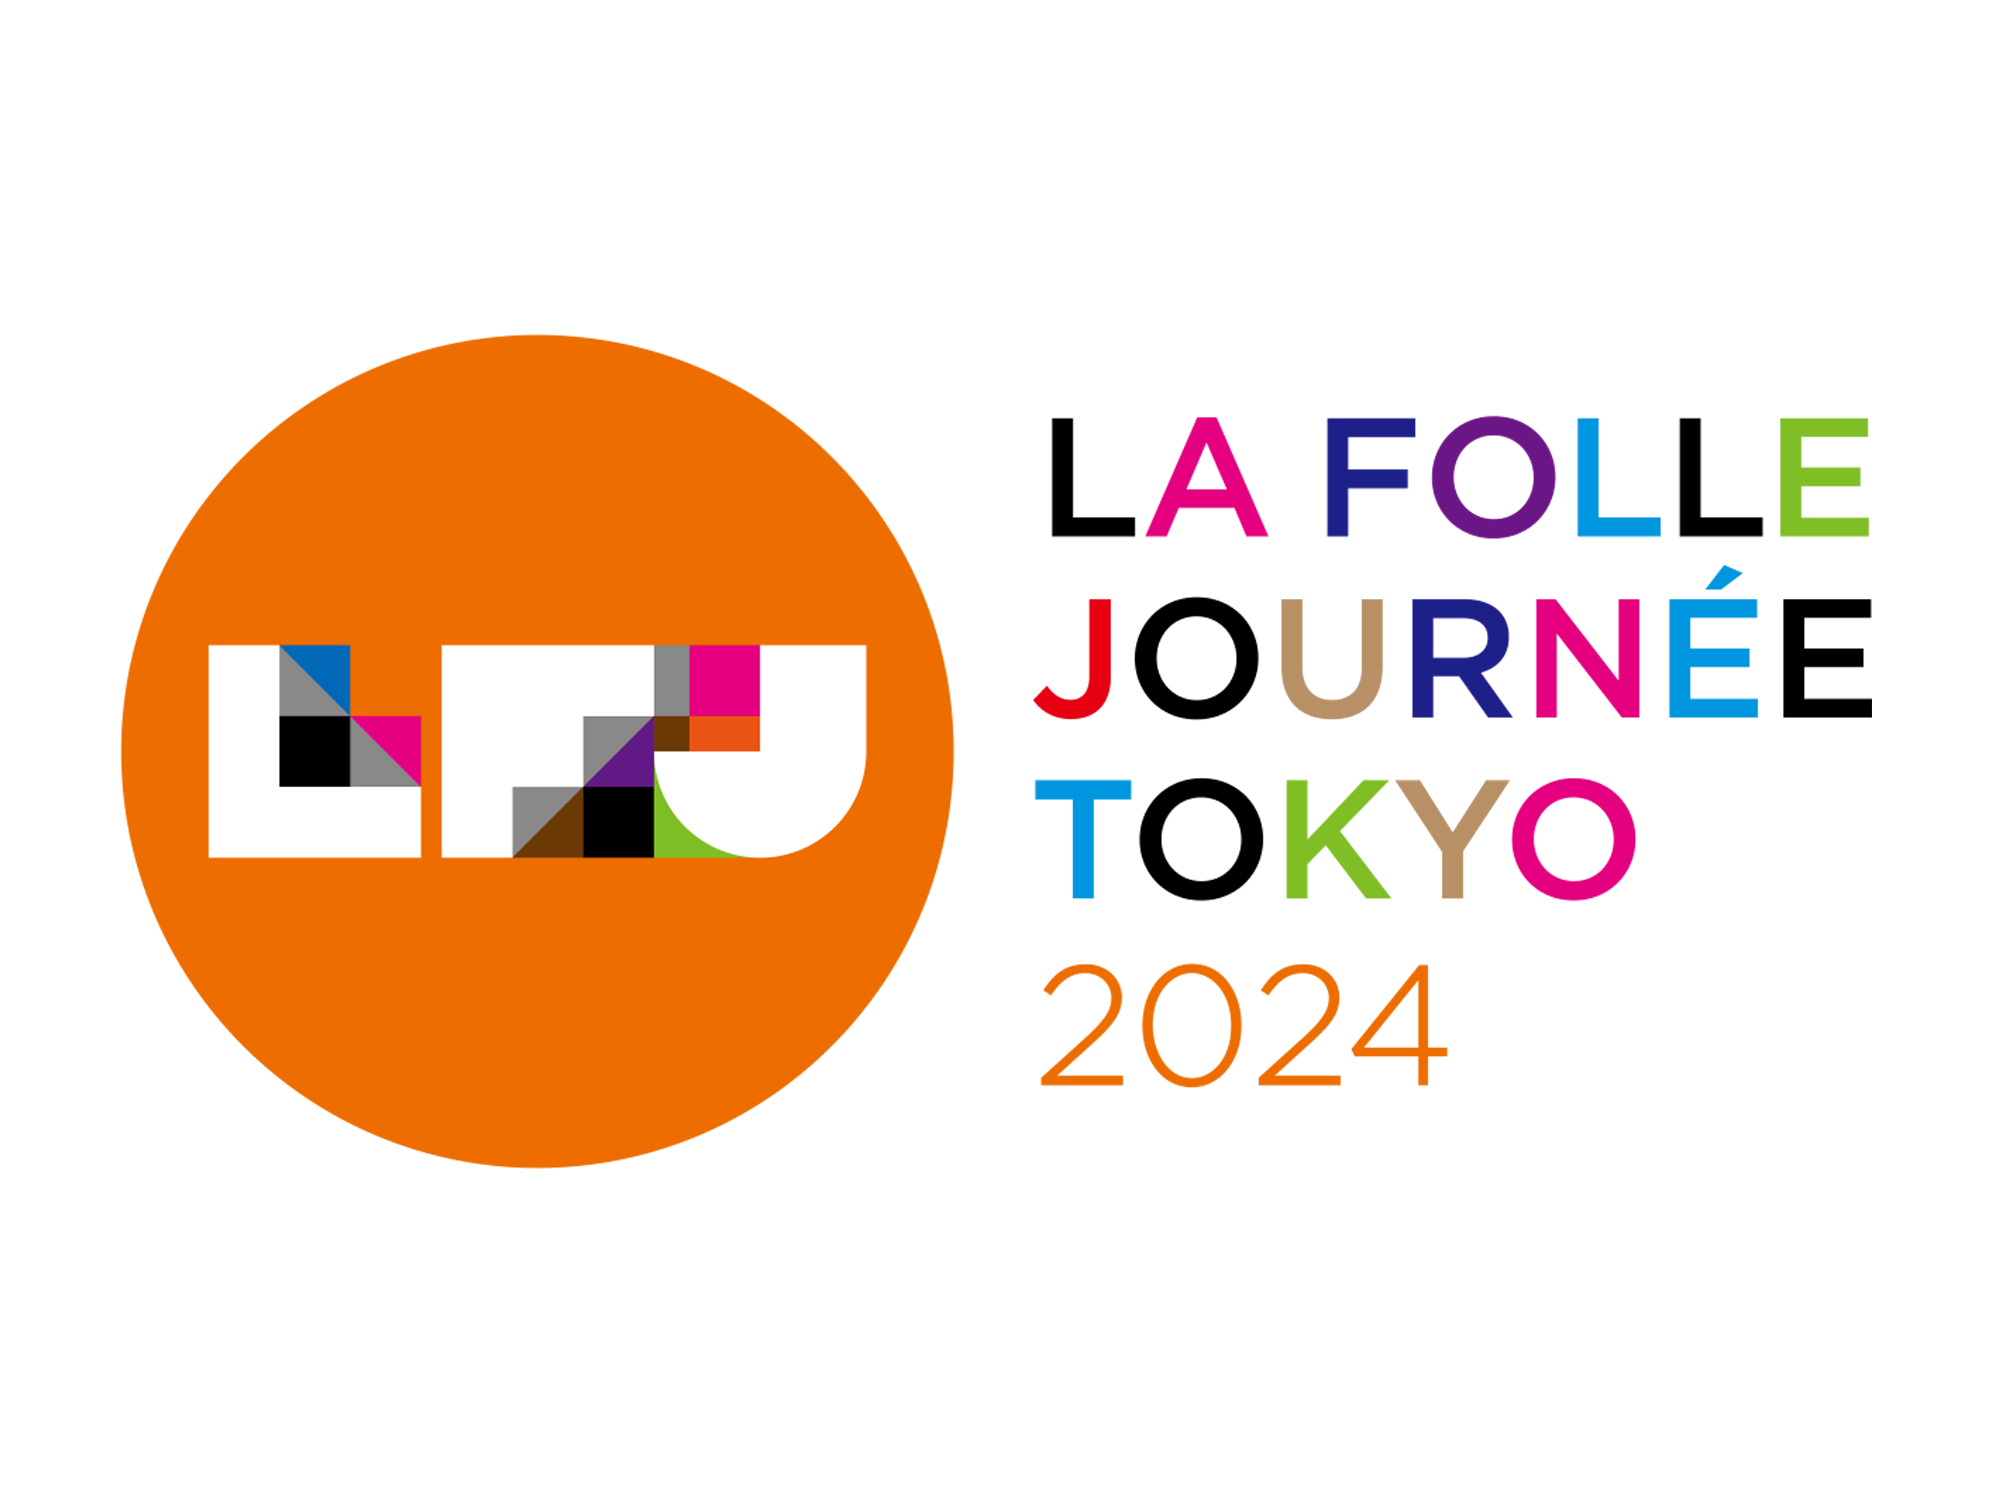 ローランド、世界最大級のクラシック音楽祭
「ラ・フォル・ジュルネ TOKYO 2024」に出展